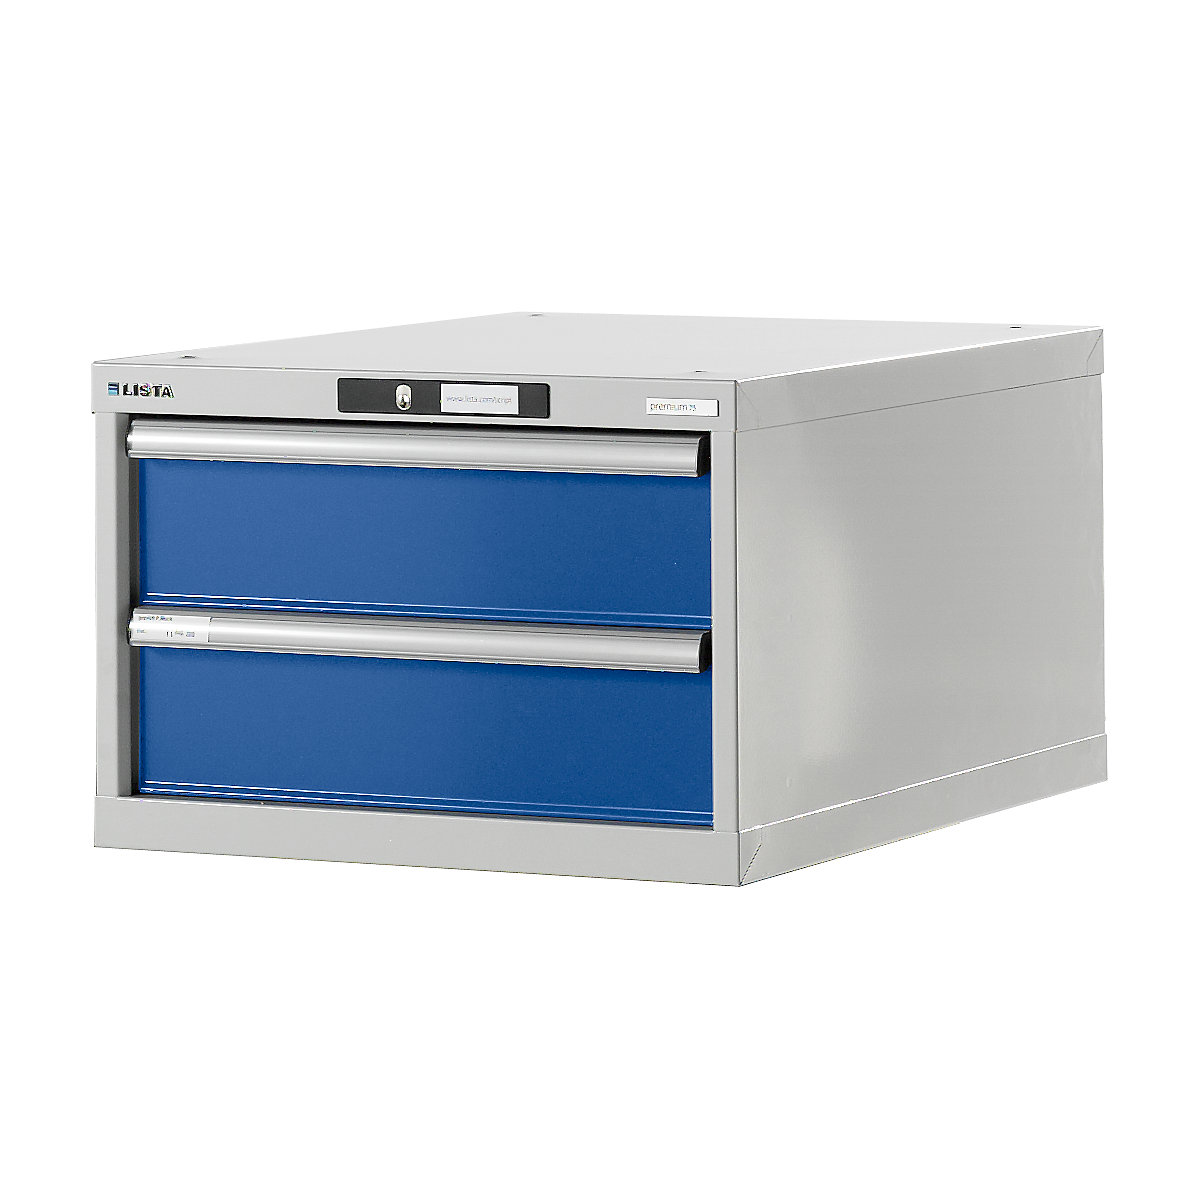 Stół warsztatowy w systemie modułowym, szafka dolna – LISTA, wys. 383 mm, 2 szuflady, niebieski gencjanowy-6